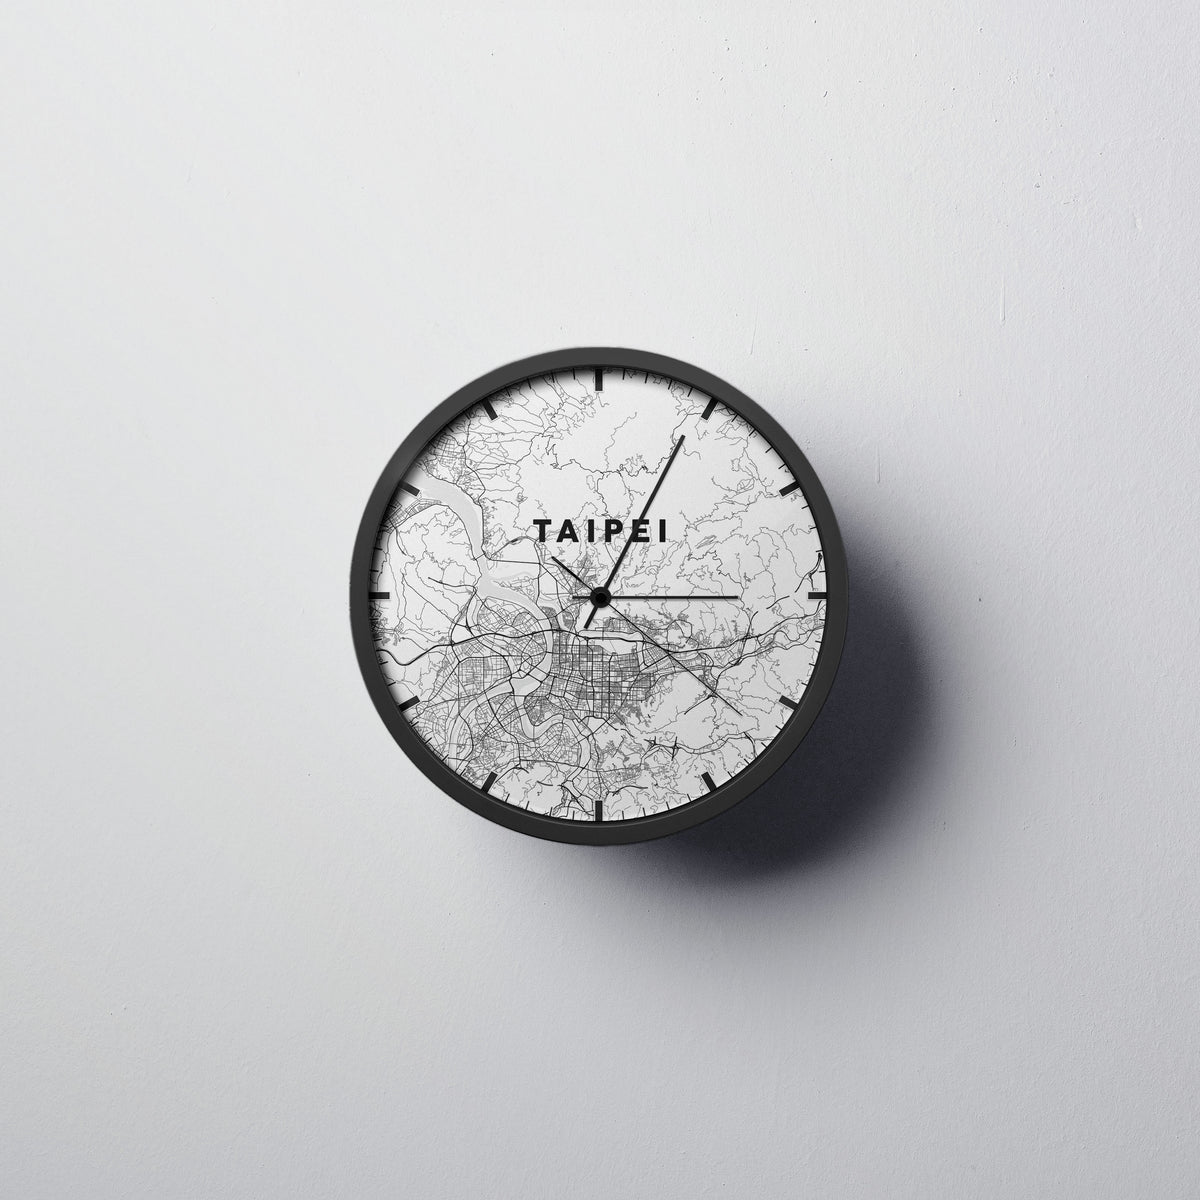 Taipei Wall Clock